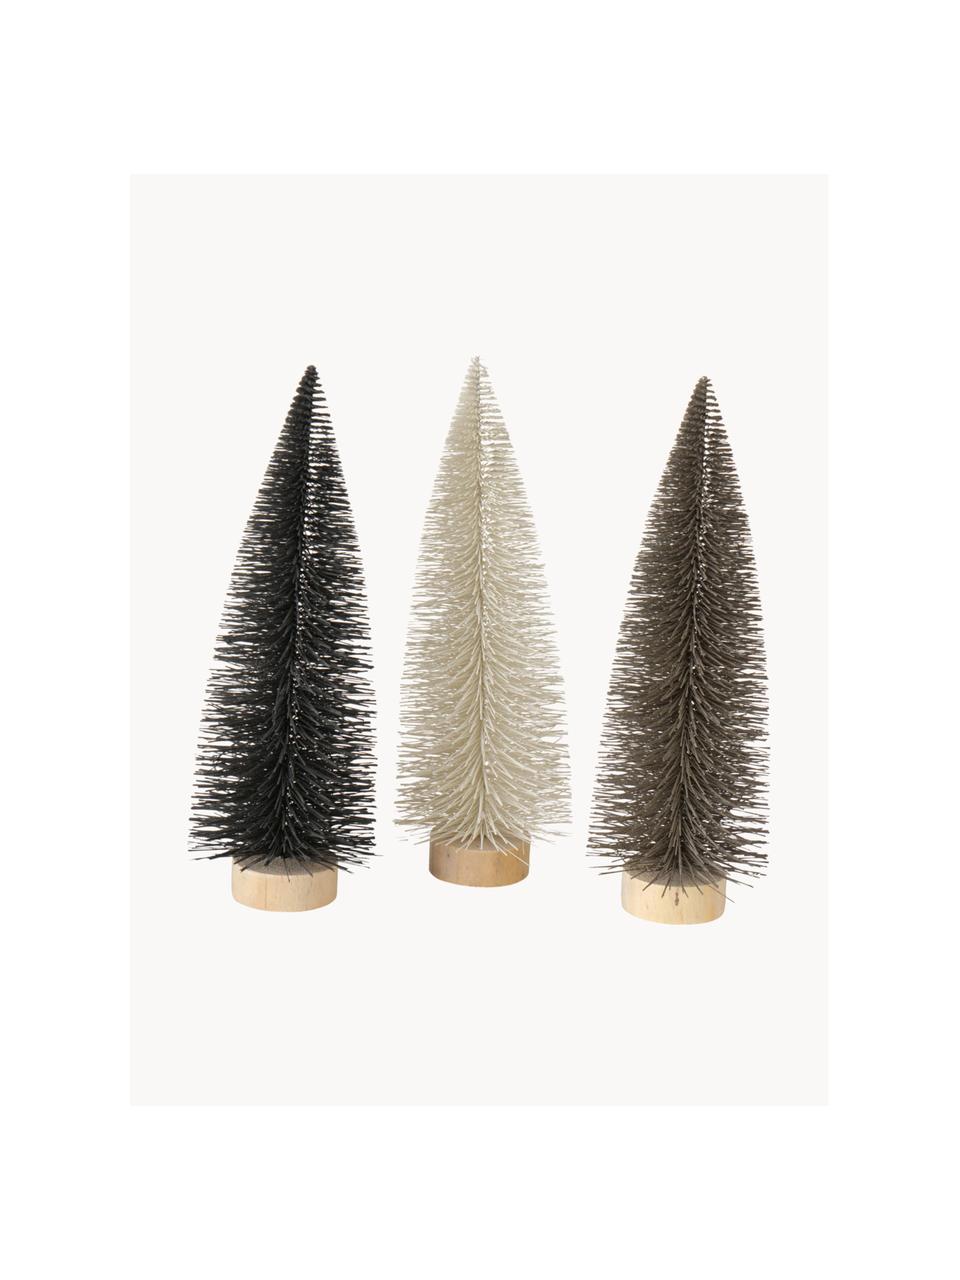 Súprava dekoratívnych vianočných stromčekov Tarvo, 3 diely, Čierna, hnedosivá, biela, Ø 14 x V 41 cm